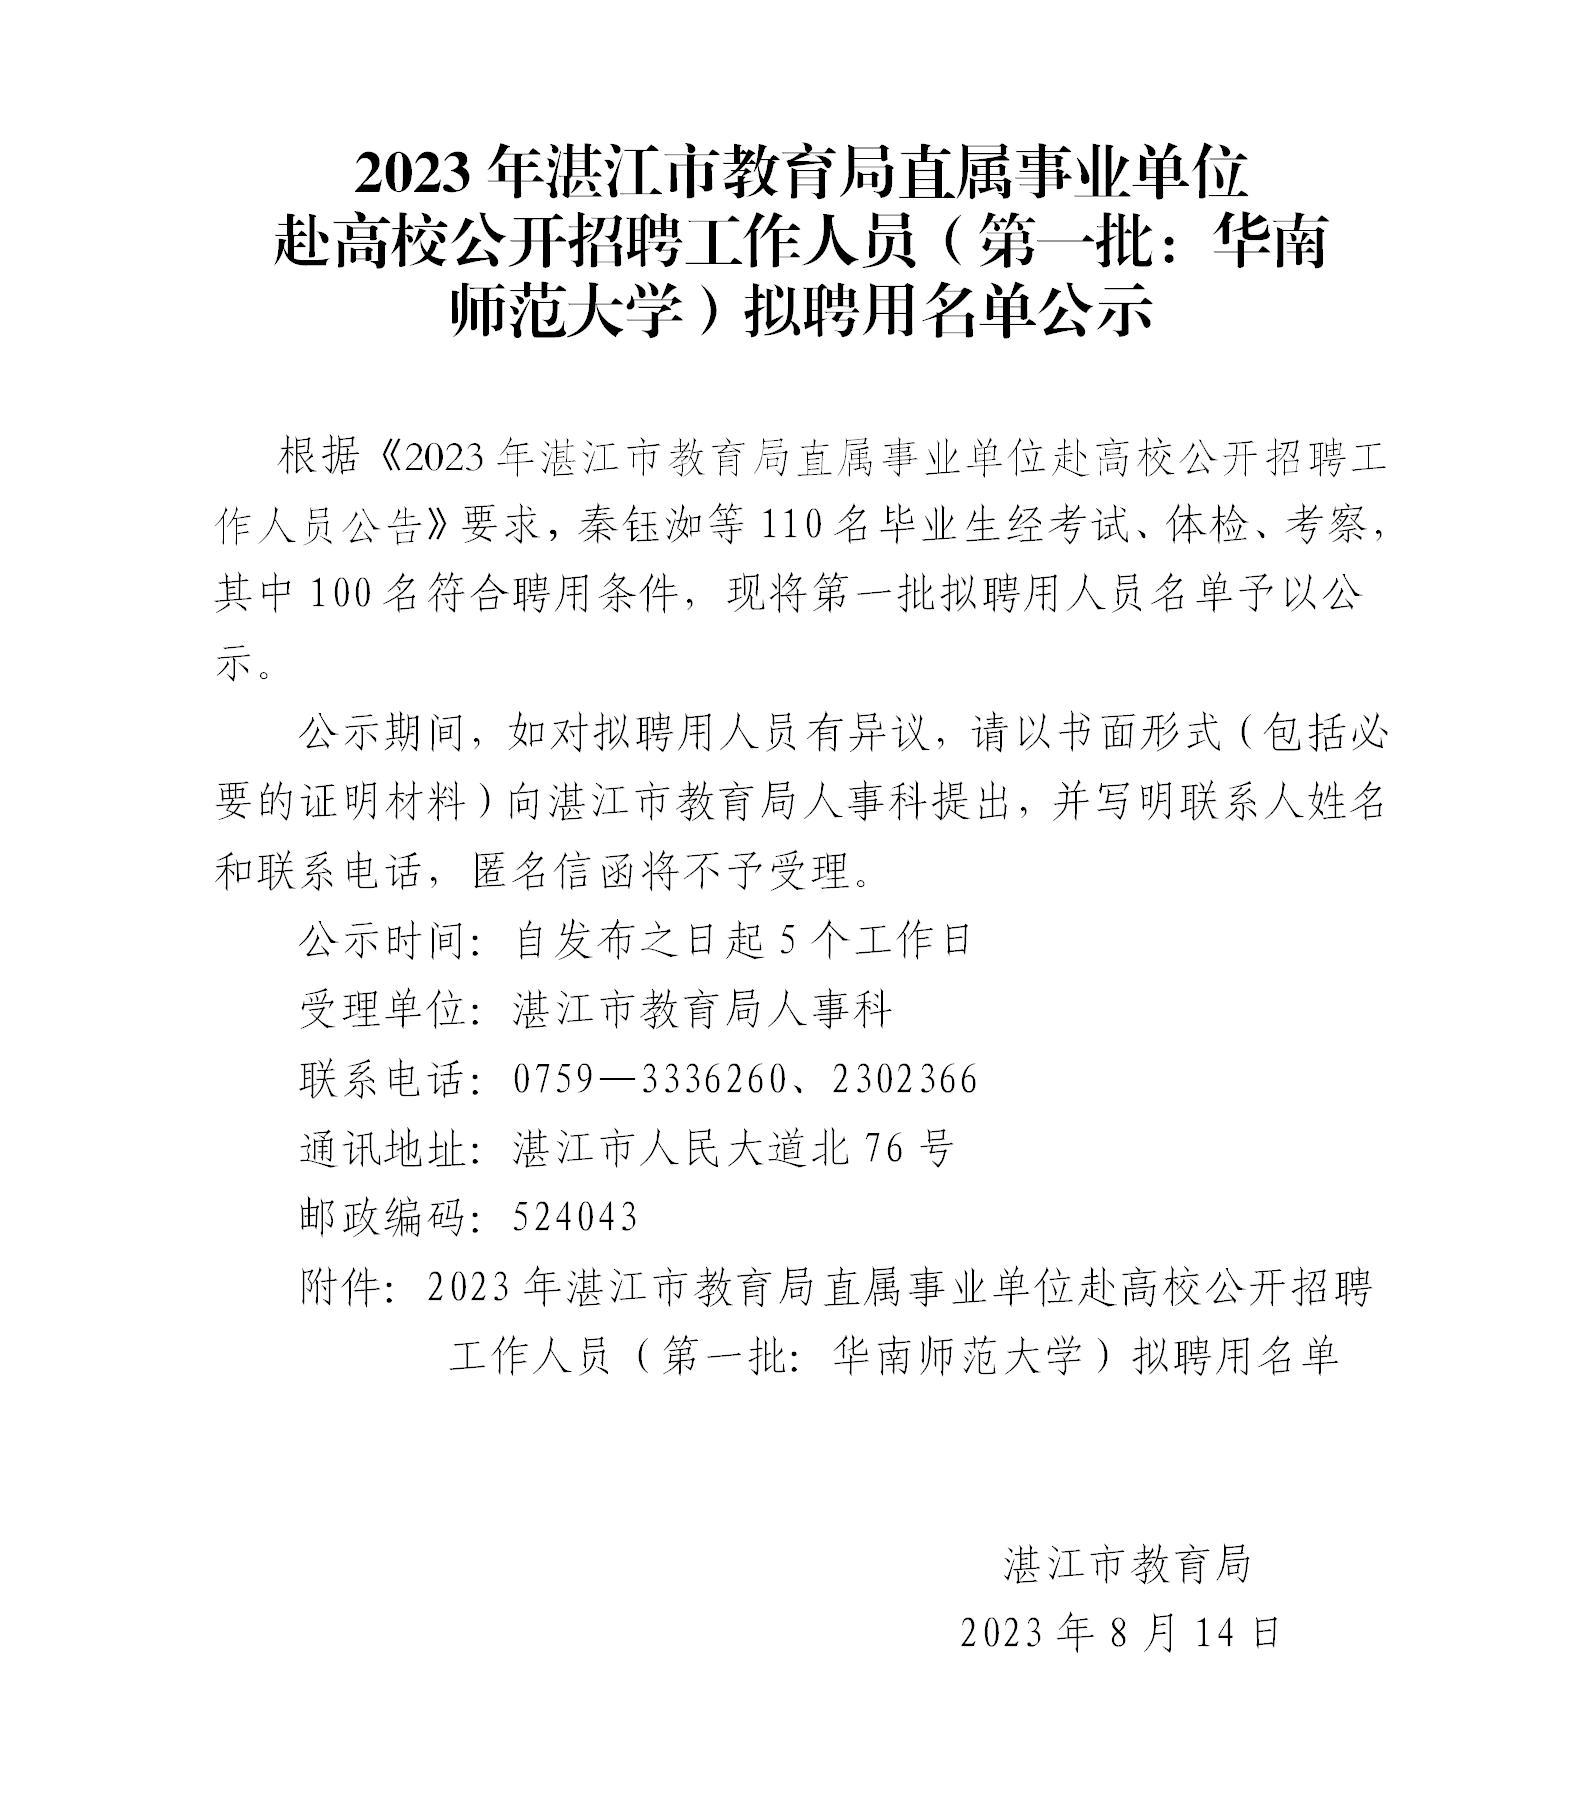 2023年湛江市教育局直属事业单位赴高校公开招聘工作人员（第一批：华南师范大学）拟聘用名单公示_01.jpg